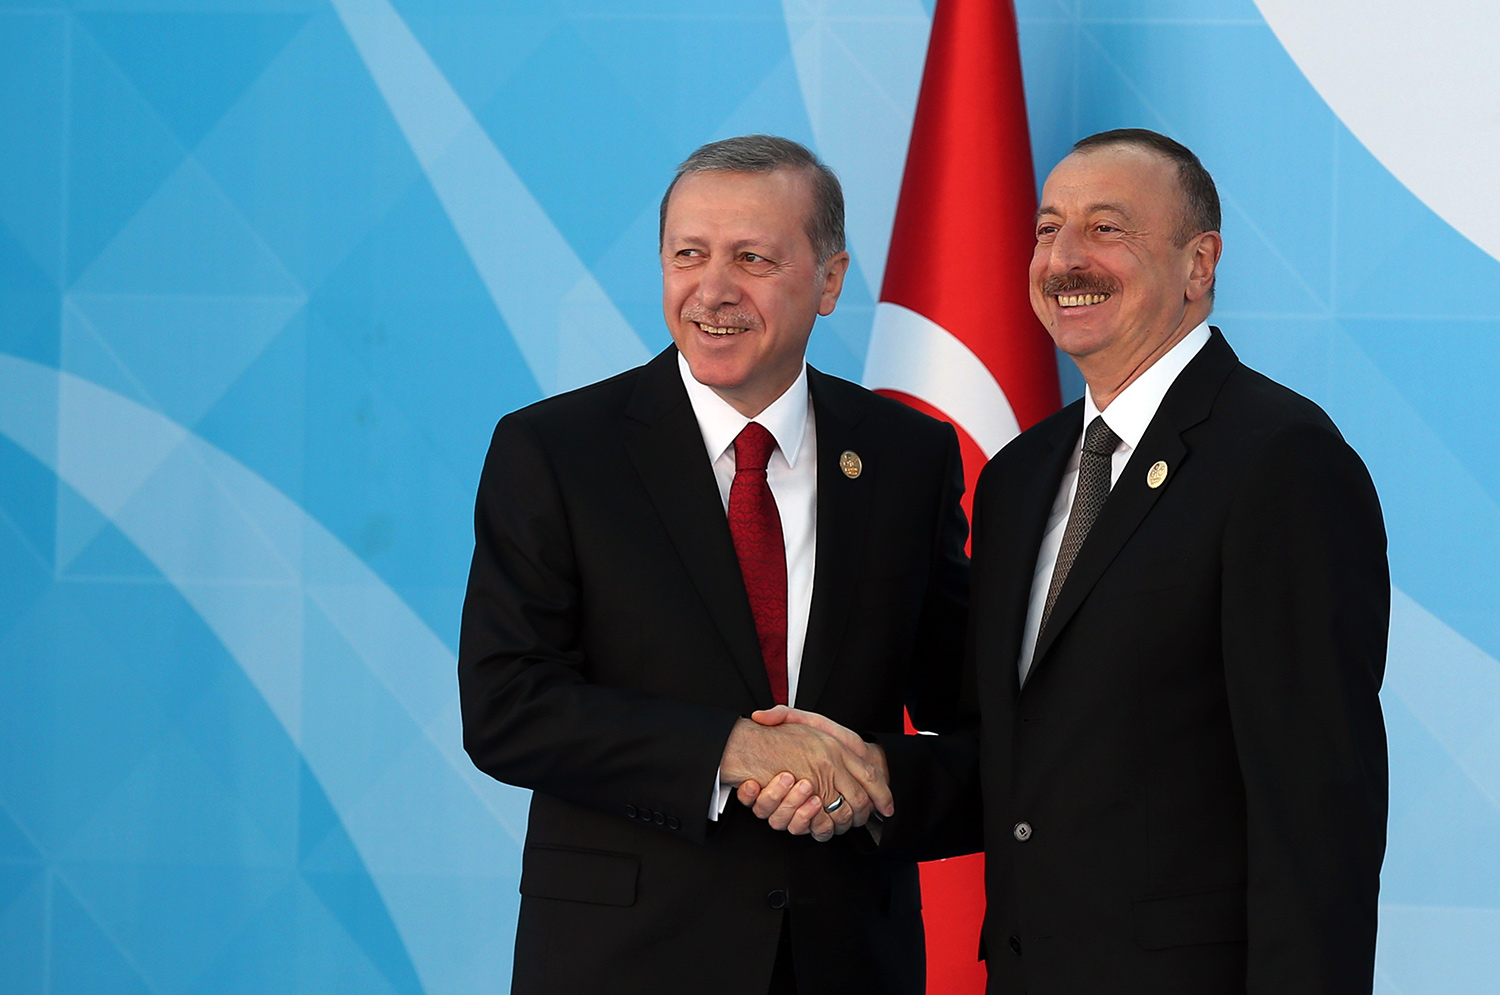  Էրդողան. Թուրքիայի և Ադրբեջանի հարաբերությունները զարգանում են բոլոր ուղղություններով